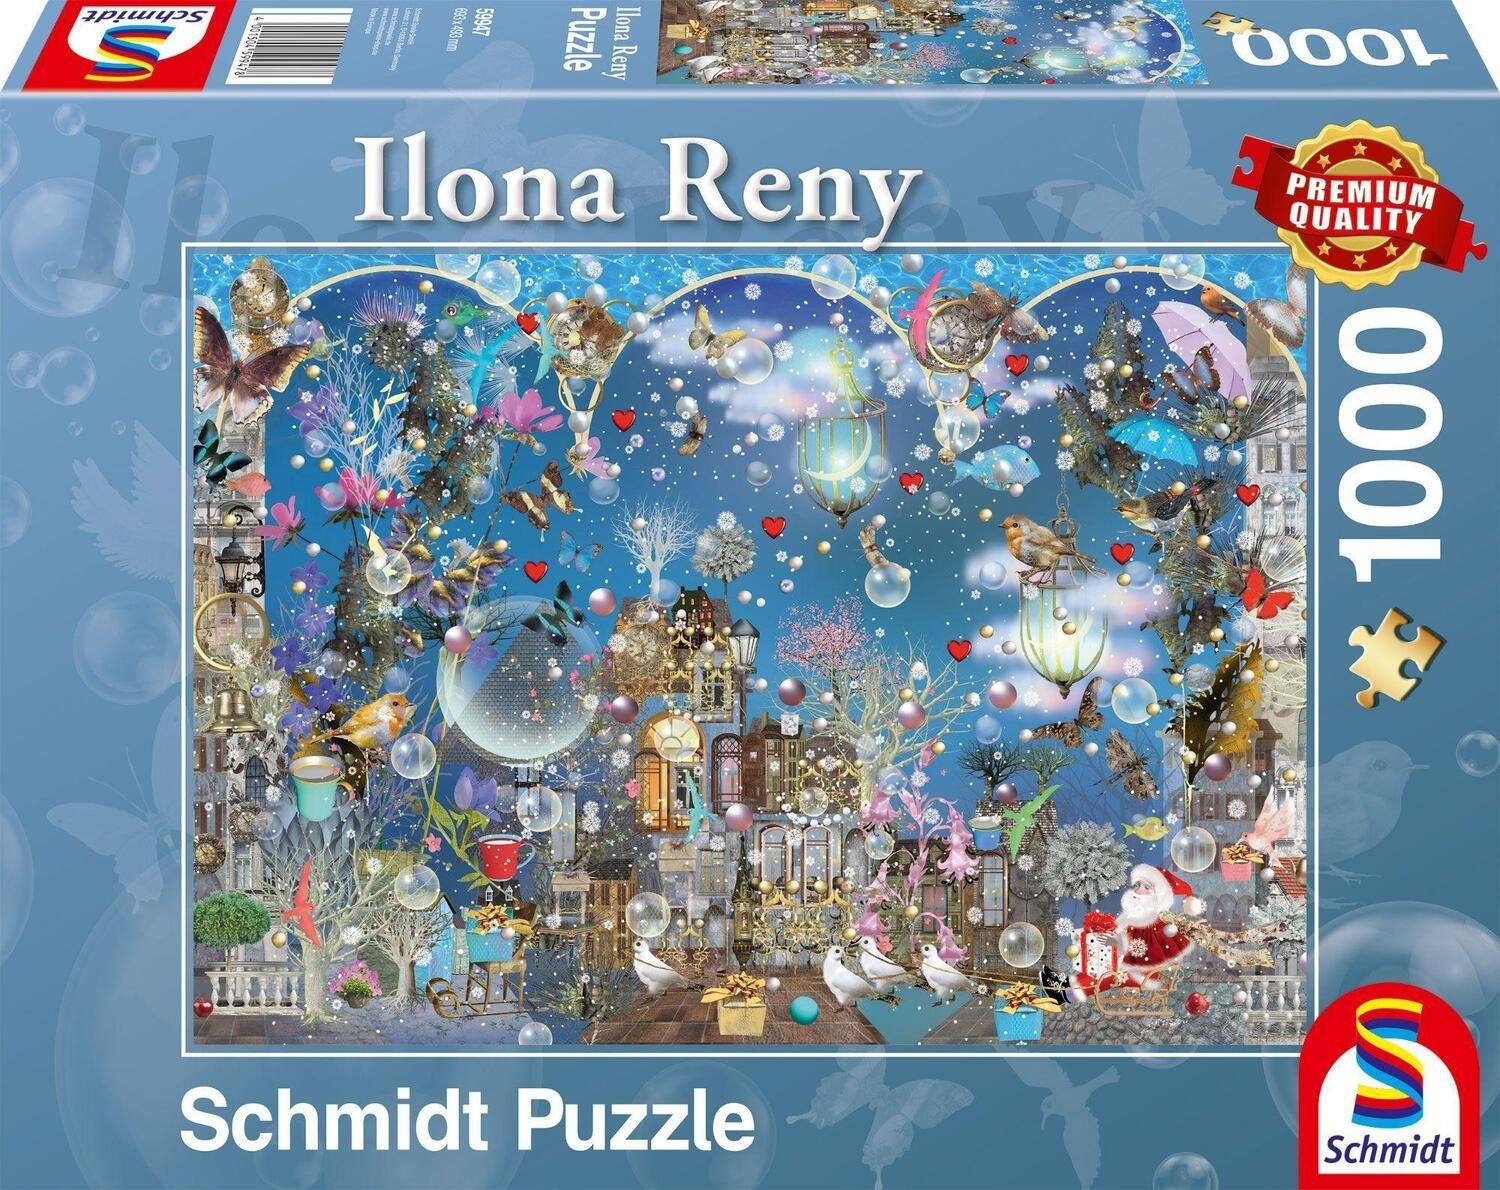 Schmidt Spiele Puzzle Blauer Nachthimmel. 1.000 Teile, 1000 Puzzleteile